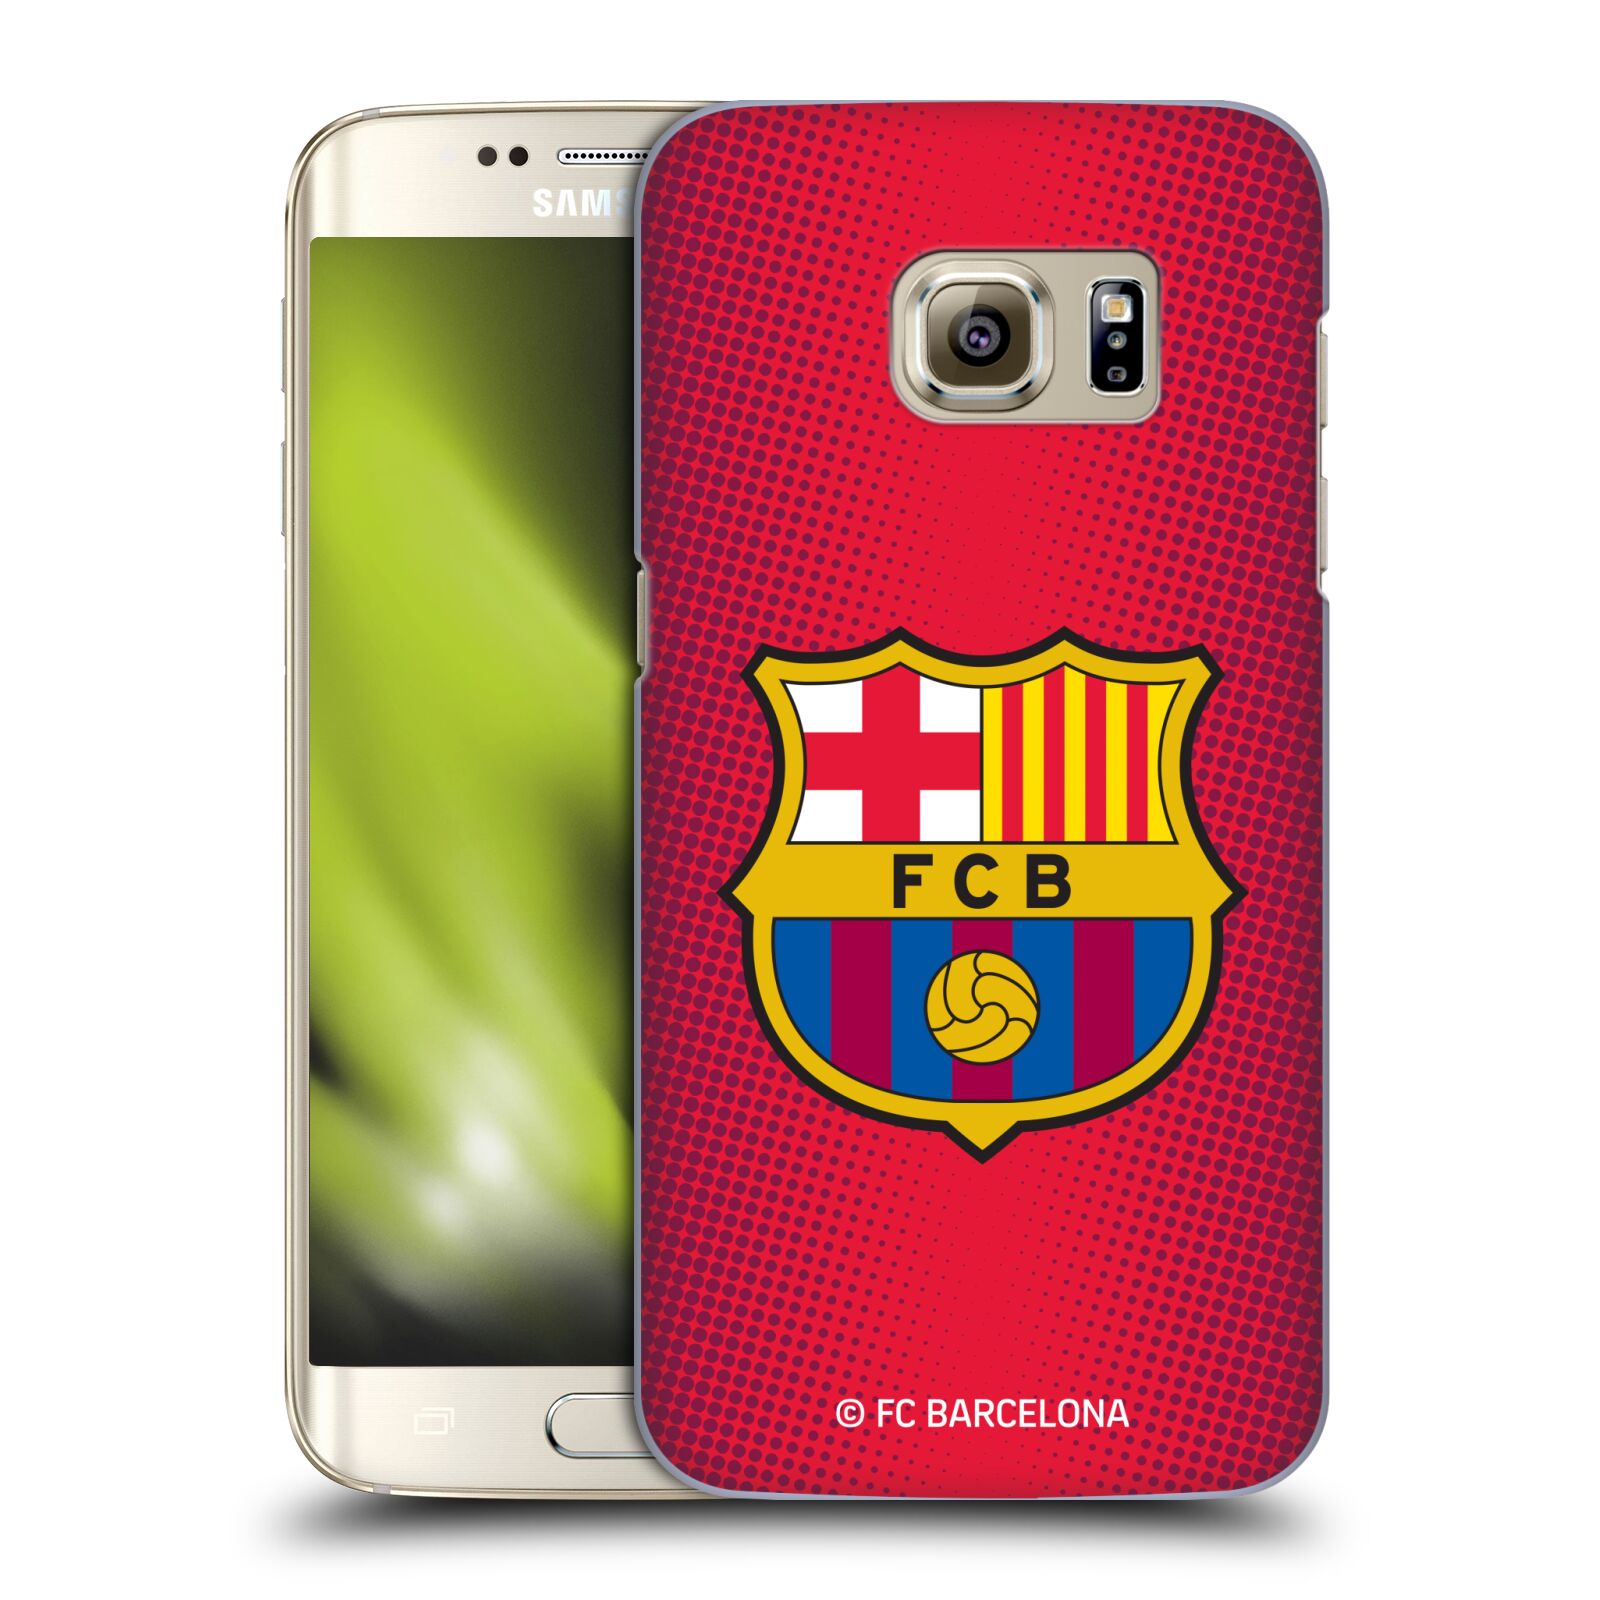 Obal na mobil Samsung Galaxy S7 EDGE - HEAD CASE - FC BARCELONA - Velký znak červená a modrá